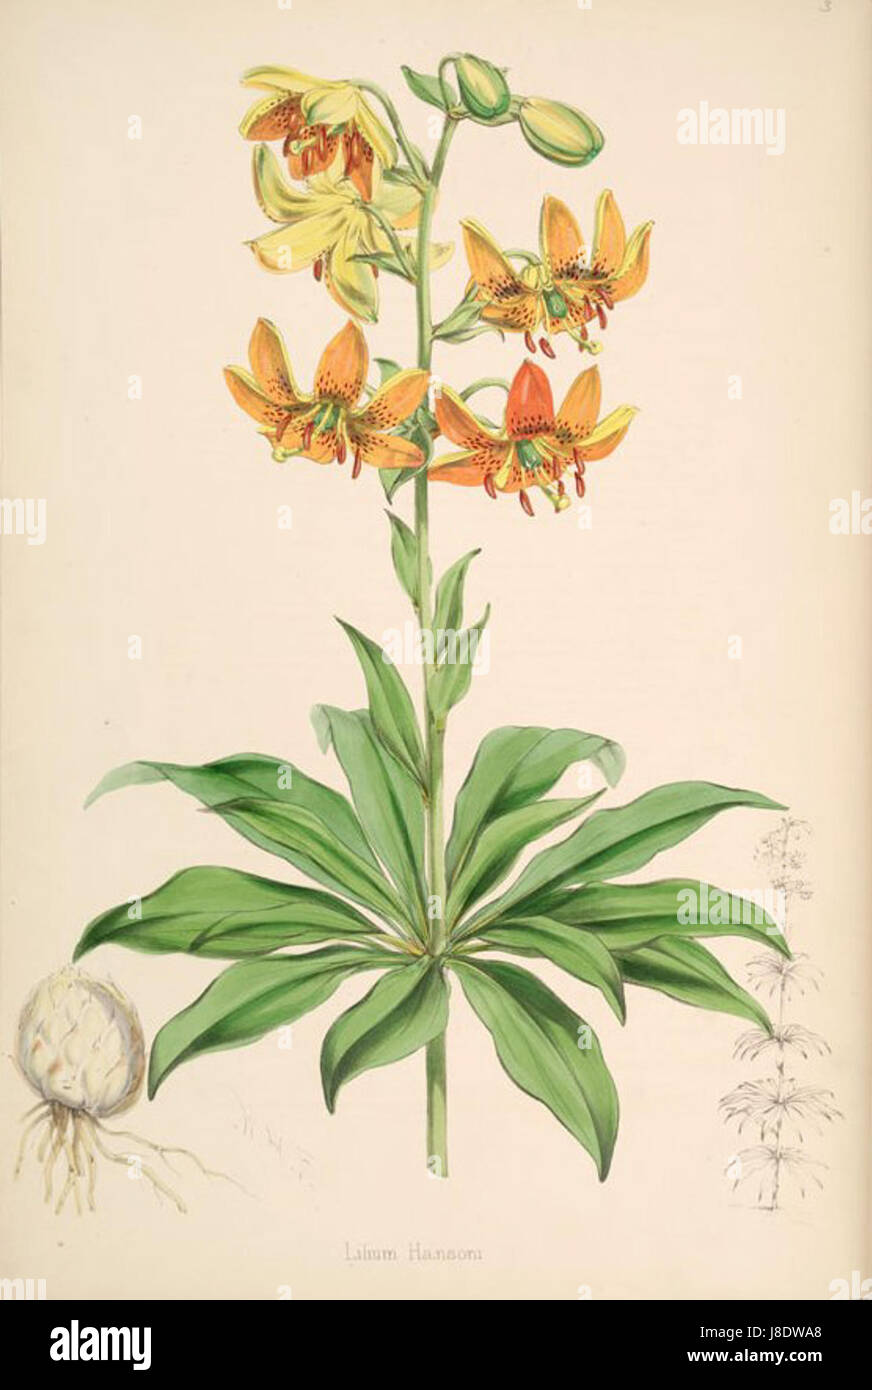 Lilium hansonii Stockfoto